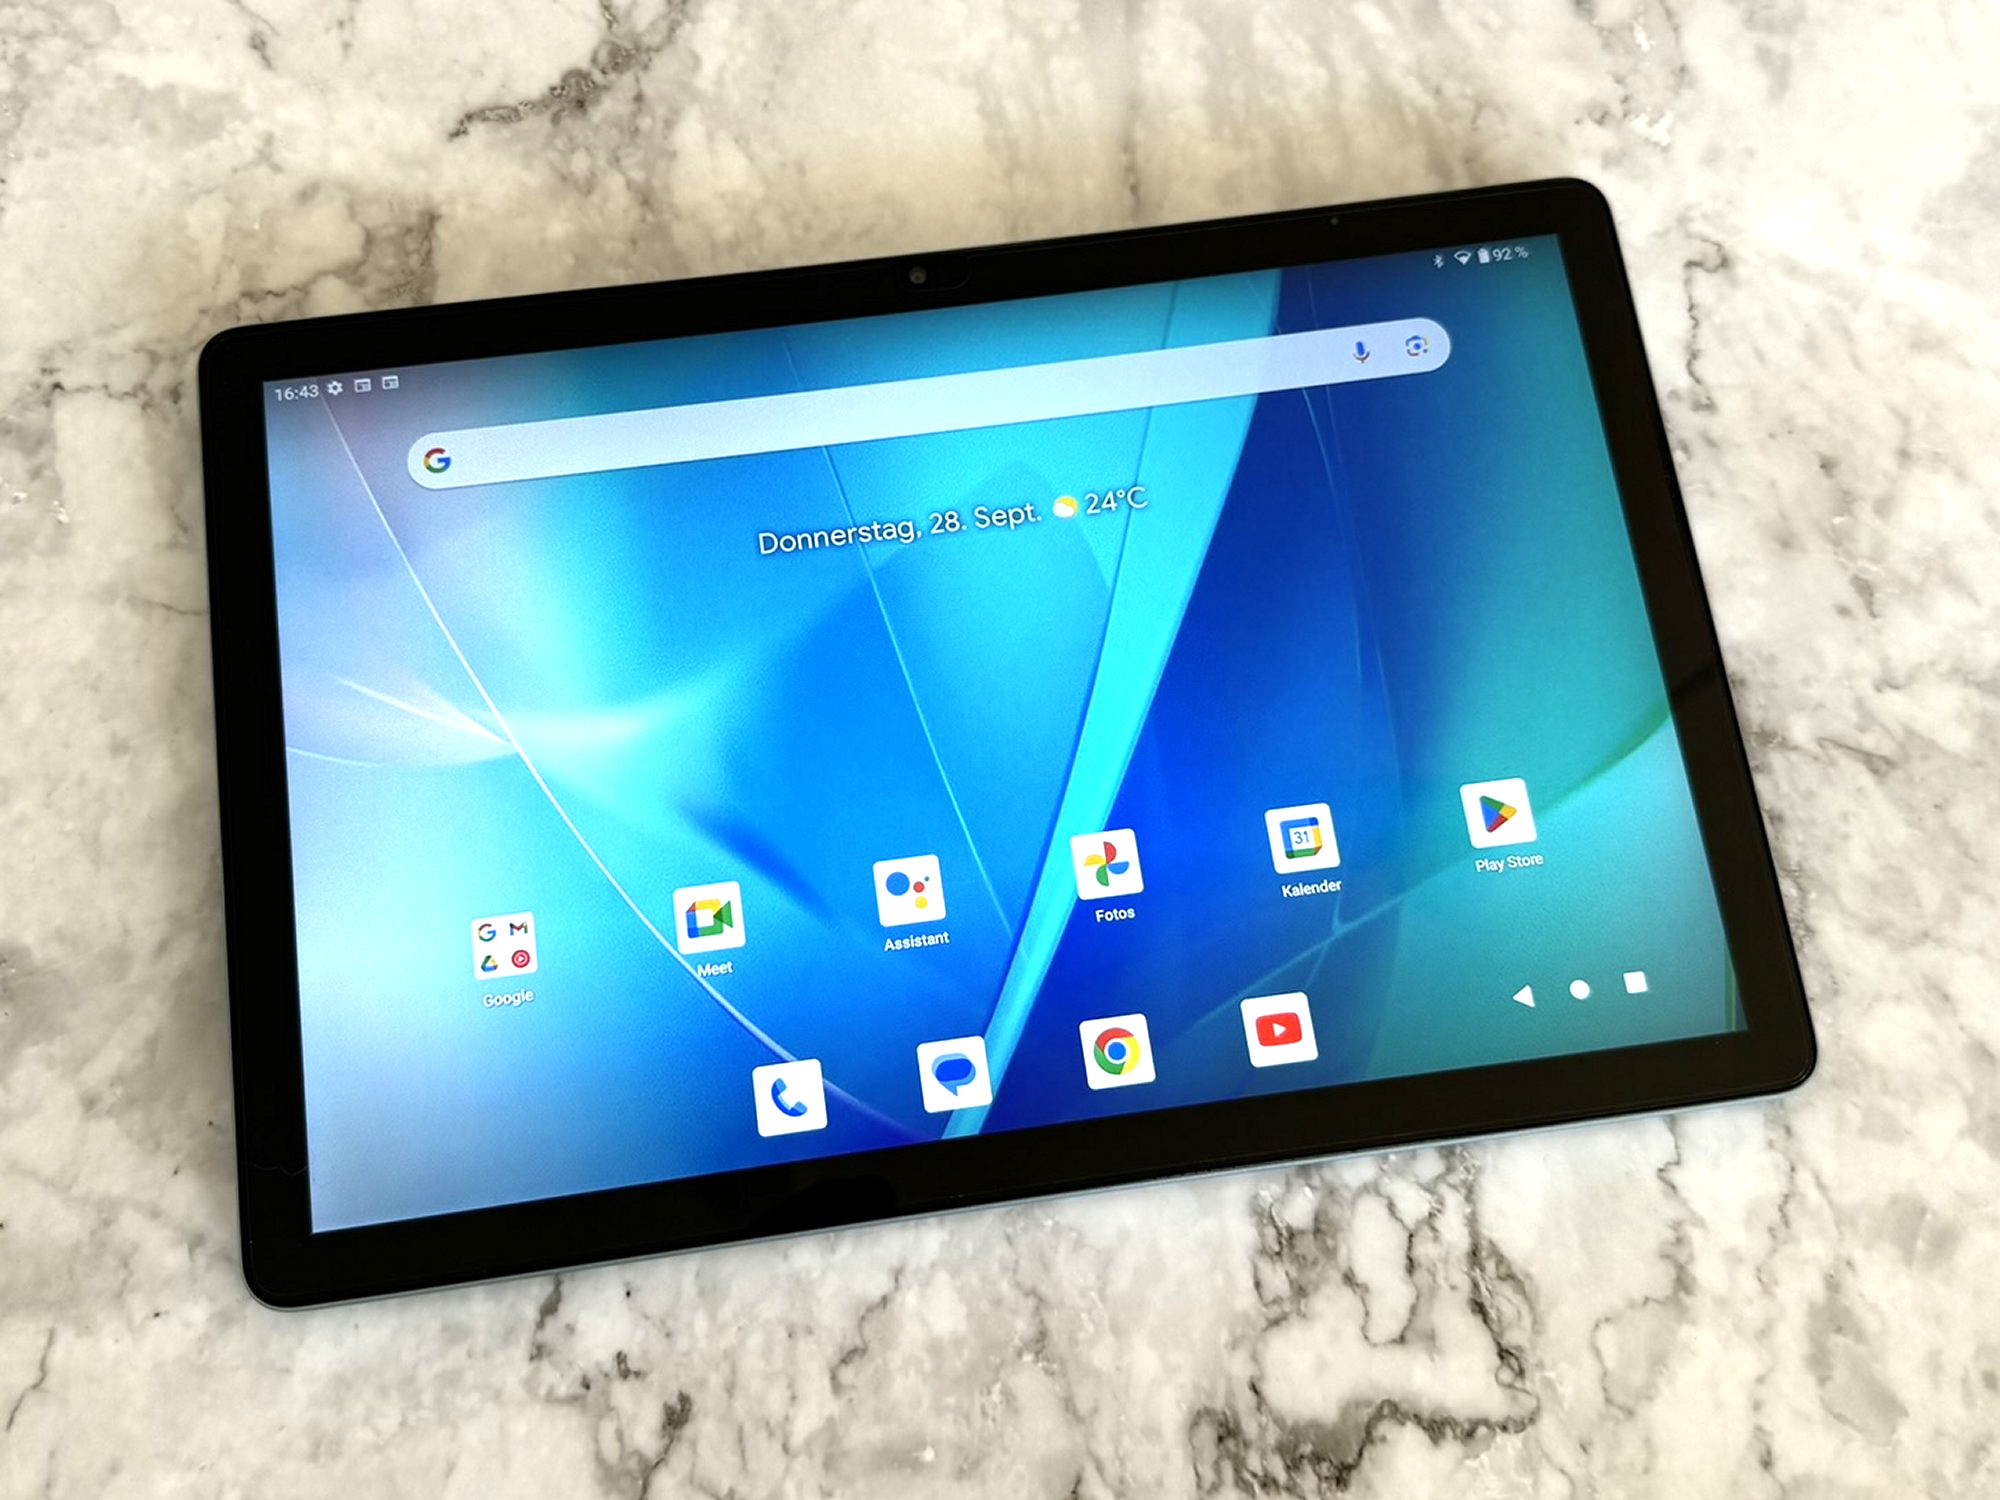 Teclast T40 Air : Une nouvelle tablette abordable est disponible